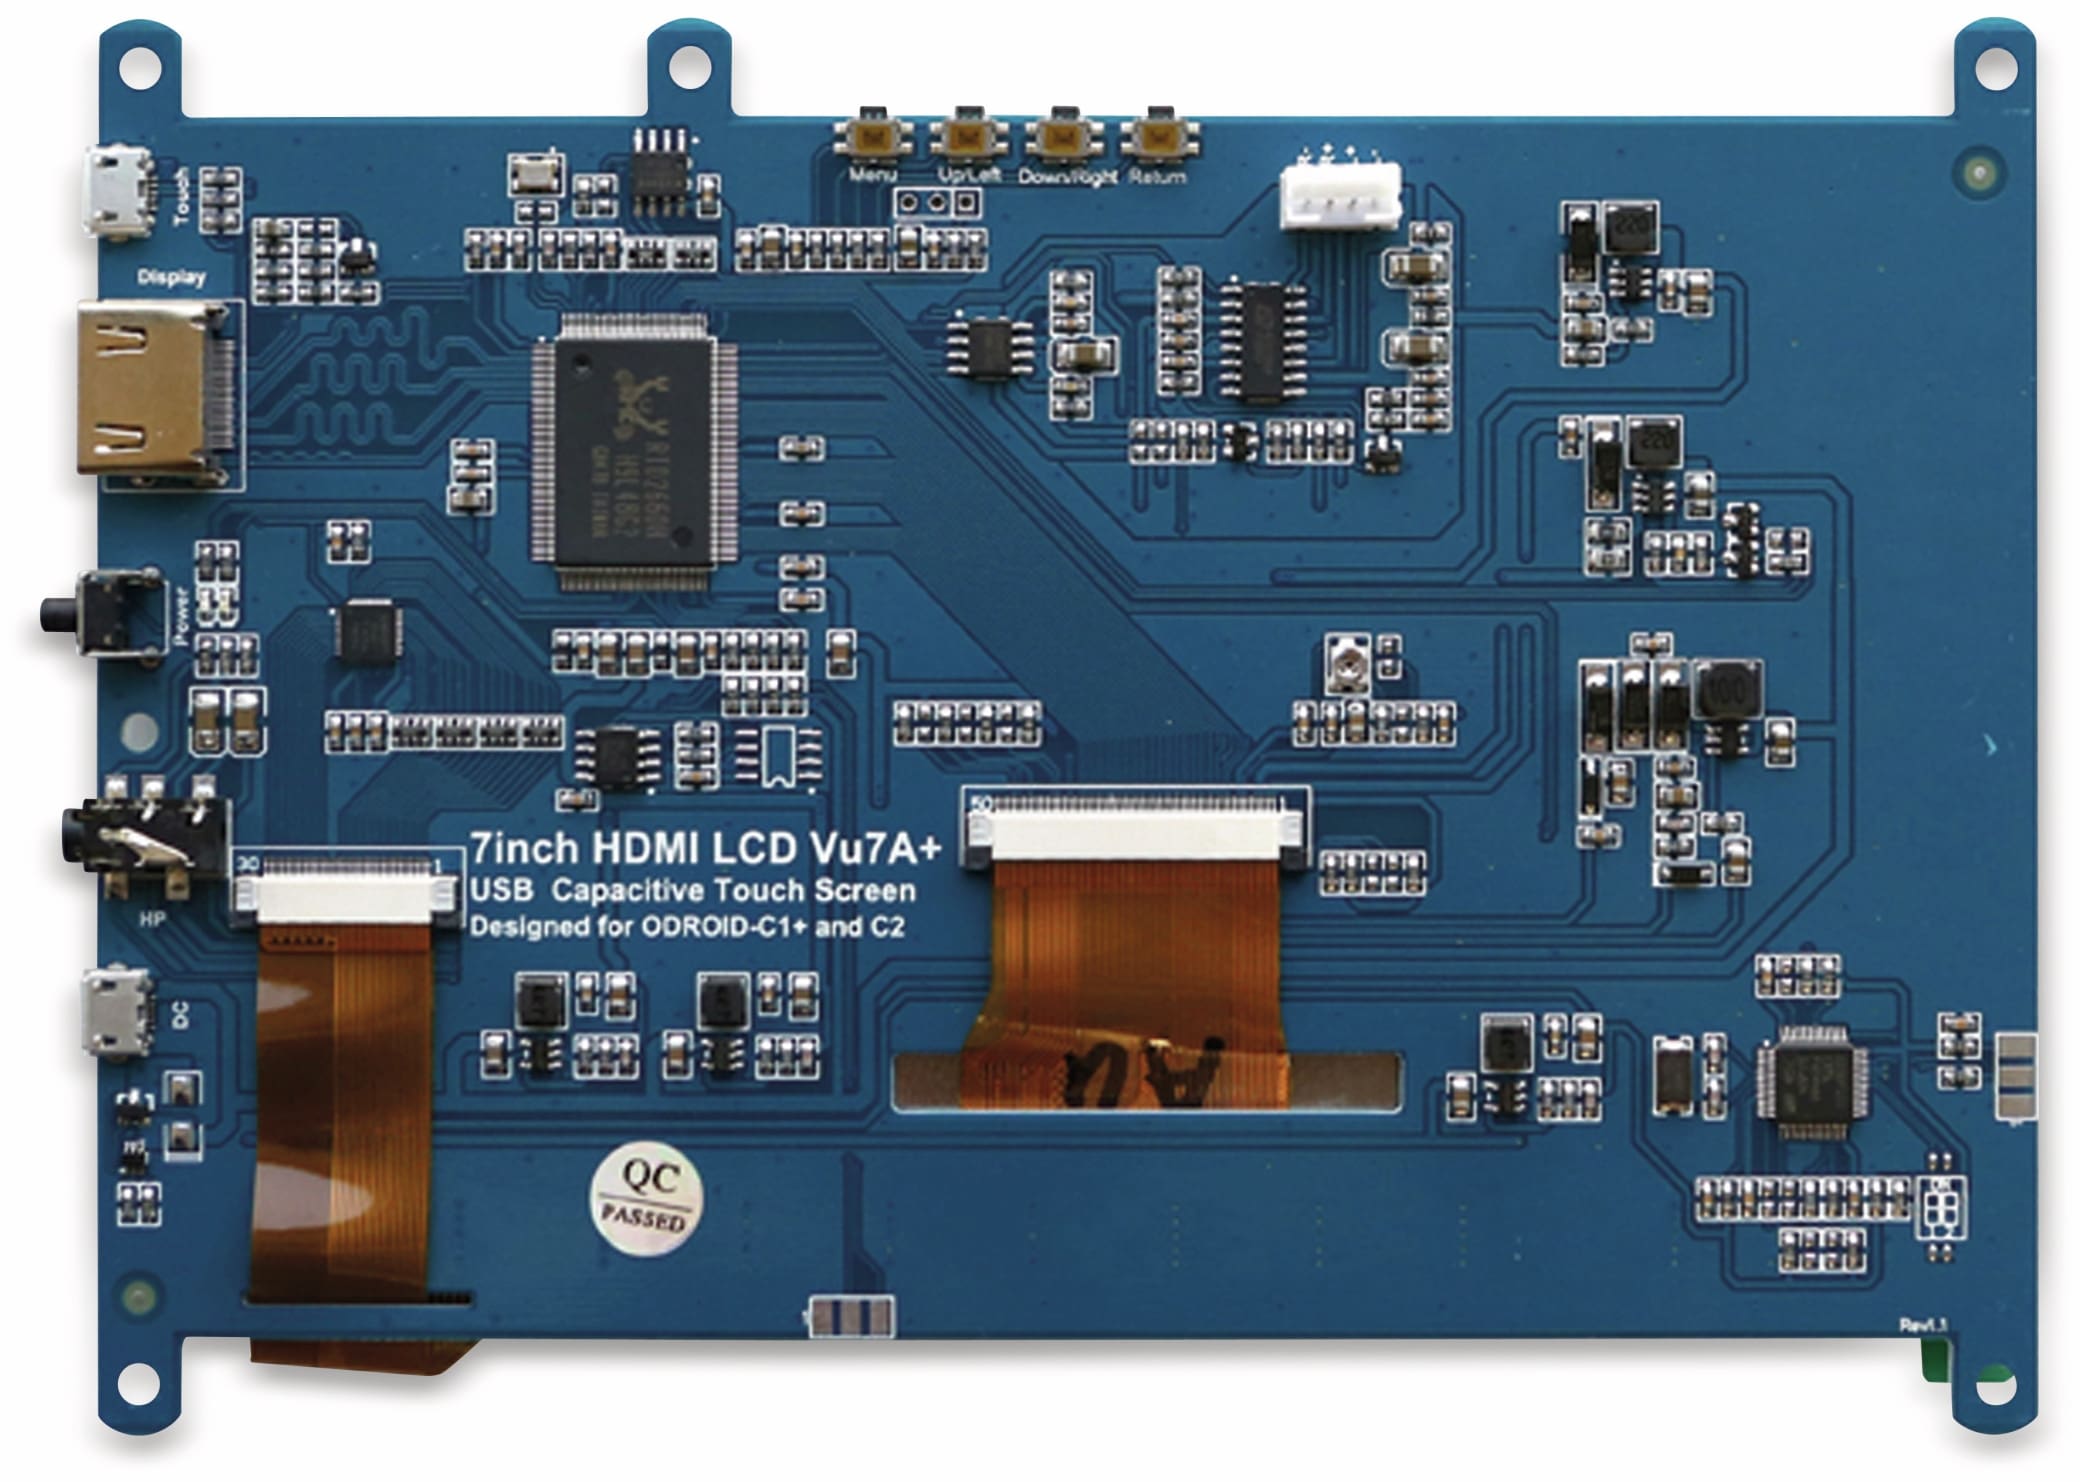 ODROID 17,8 cm (7") Multitouch TFT-Display mit HDMI und Audio VU7A PLUS